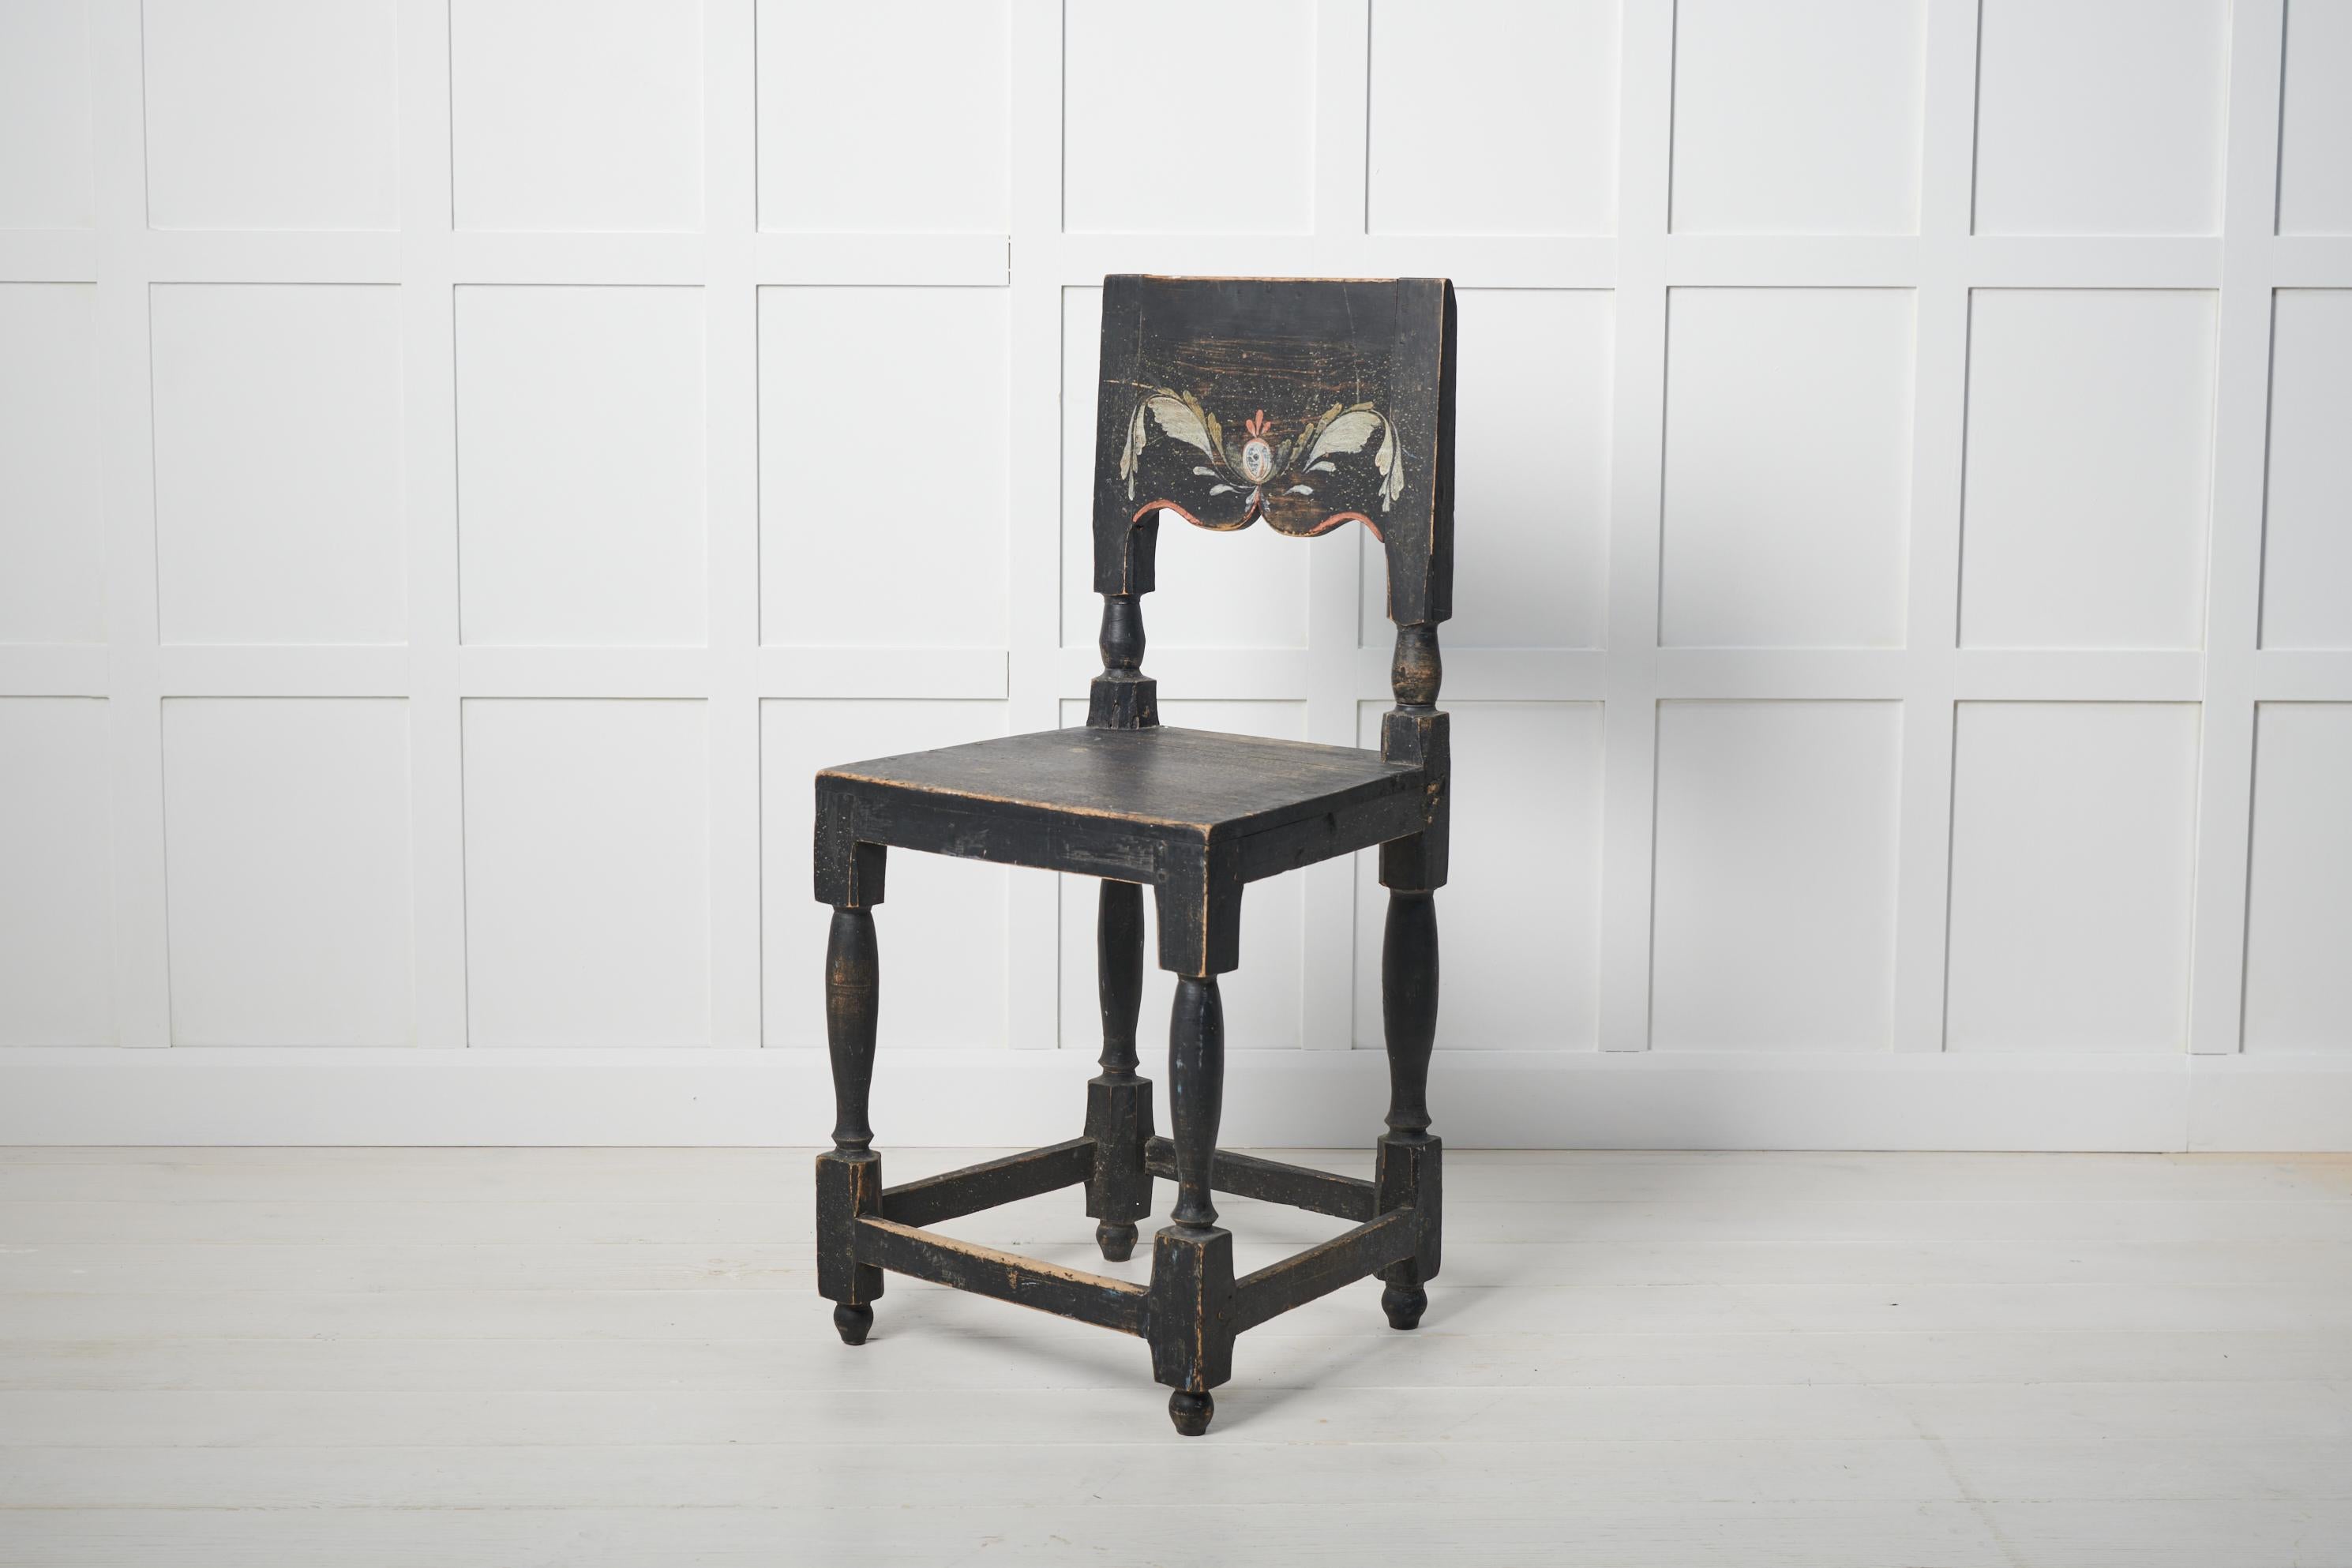 Antiker Volkskunststuhl aus Schweden aus der Mitte des 19. Jahrhunderts. Der Stuhl ist ein klassischer Volkskunststuhl mit einem Modell, das seine Wurzeln in der Renaissancezeit hat. Hergestellt aus Kiefer mit der Originalfarbe, einschließlich des